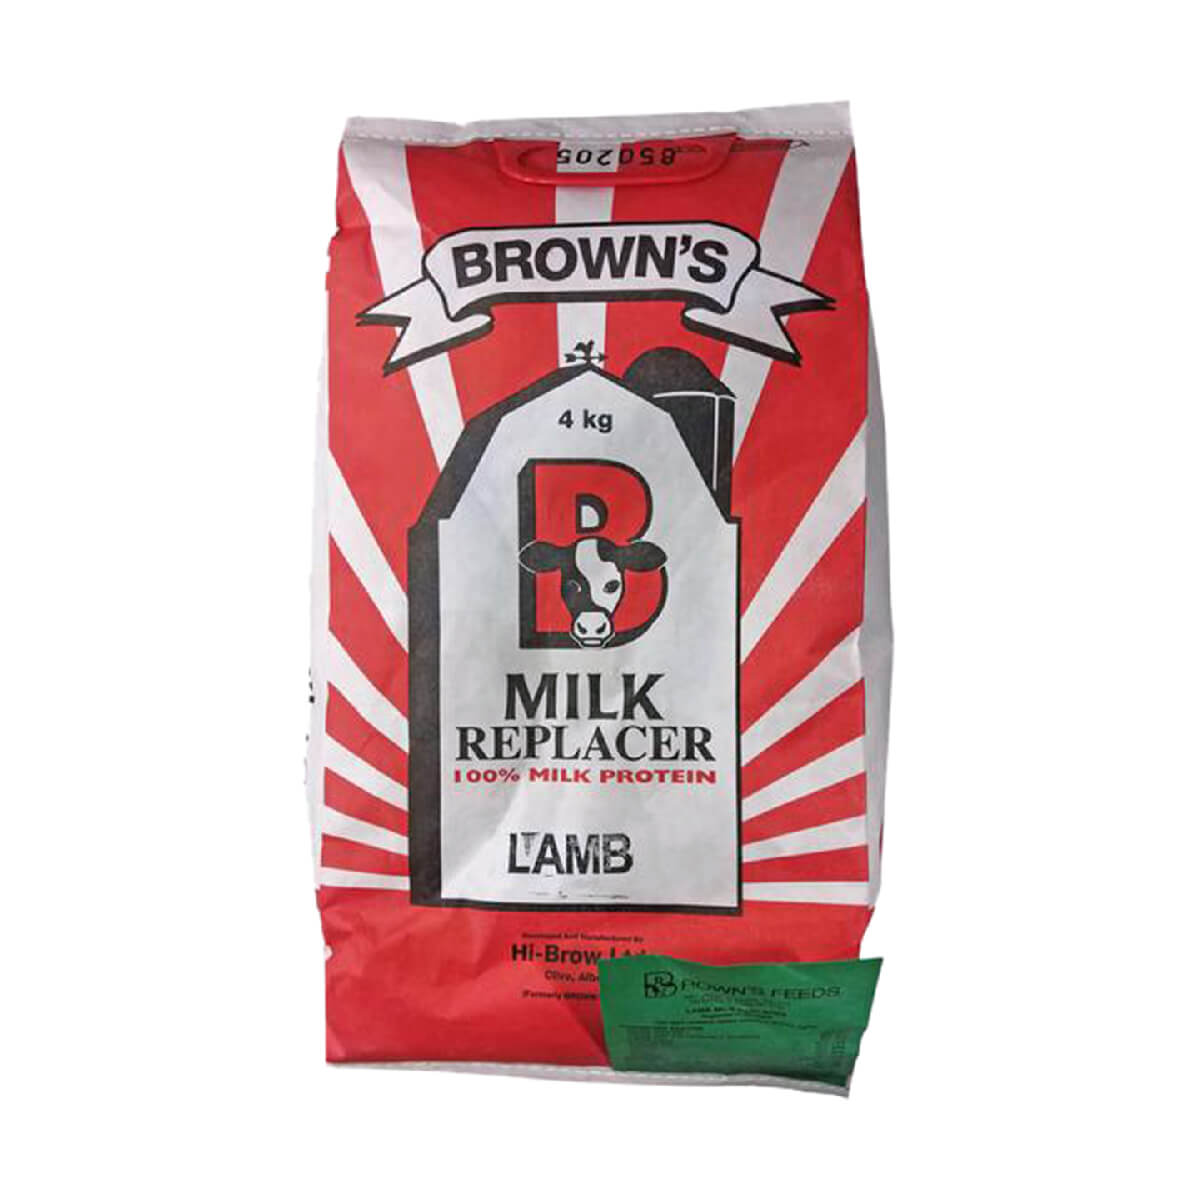 Brown's Lamb Milk Replacer - 4 kg